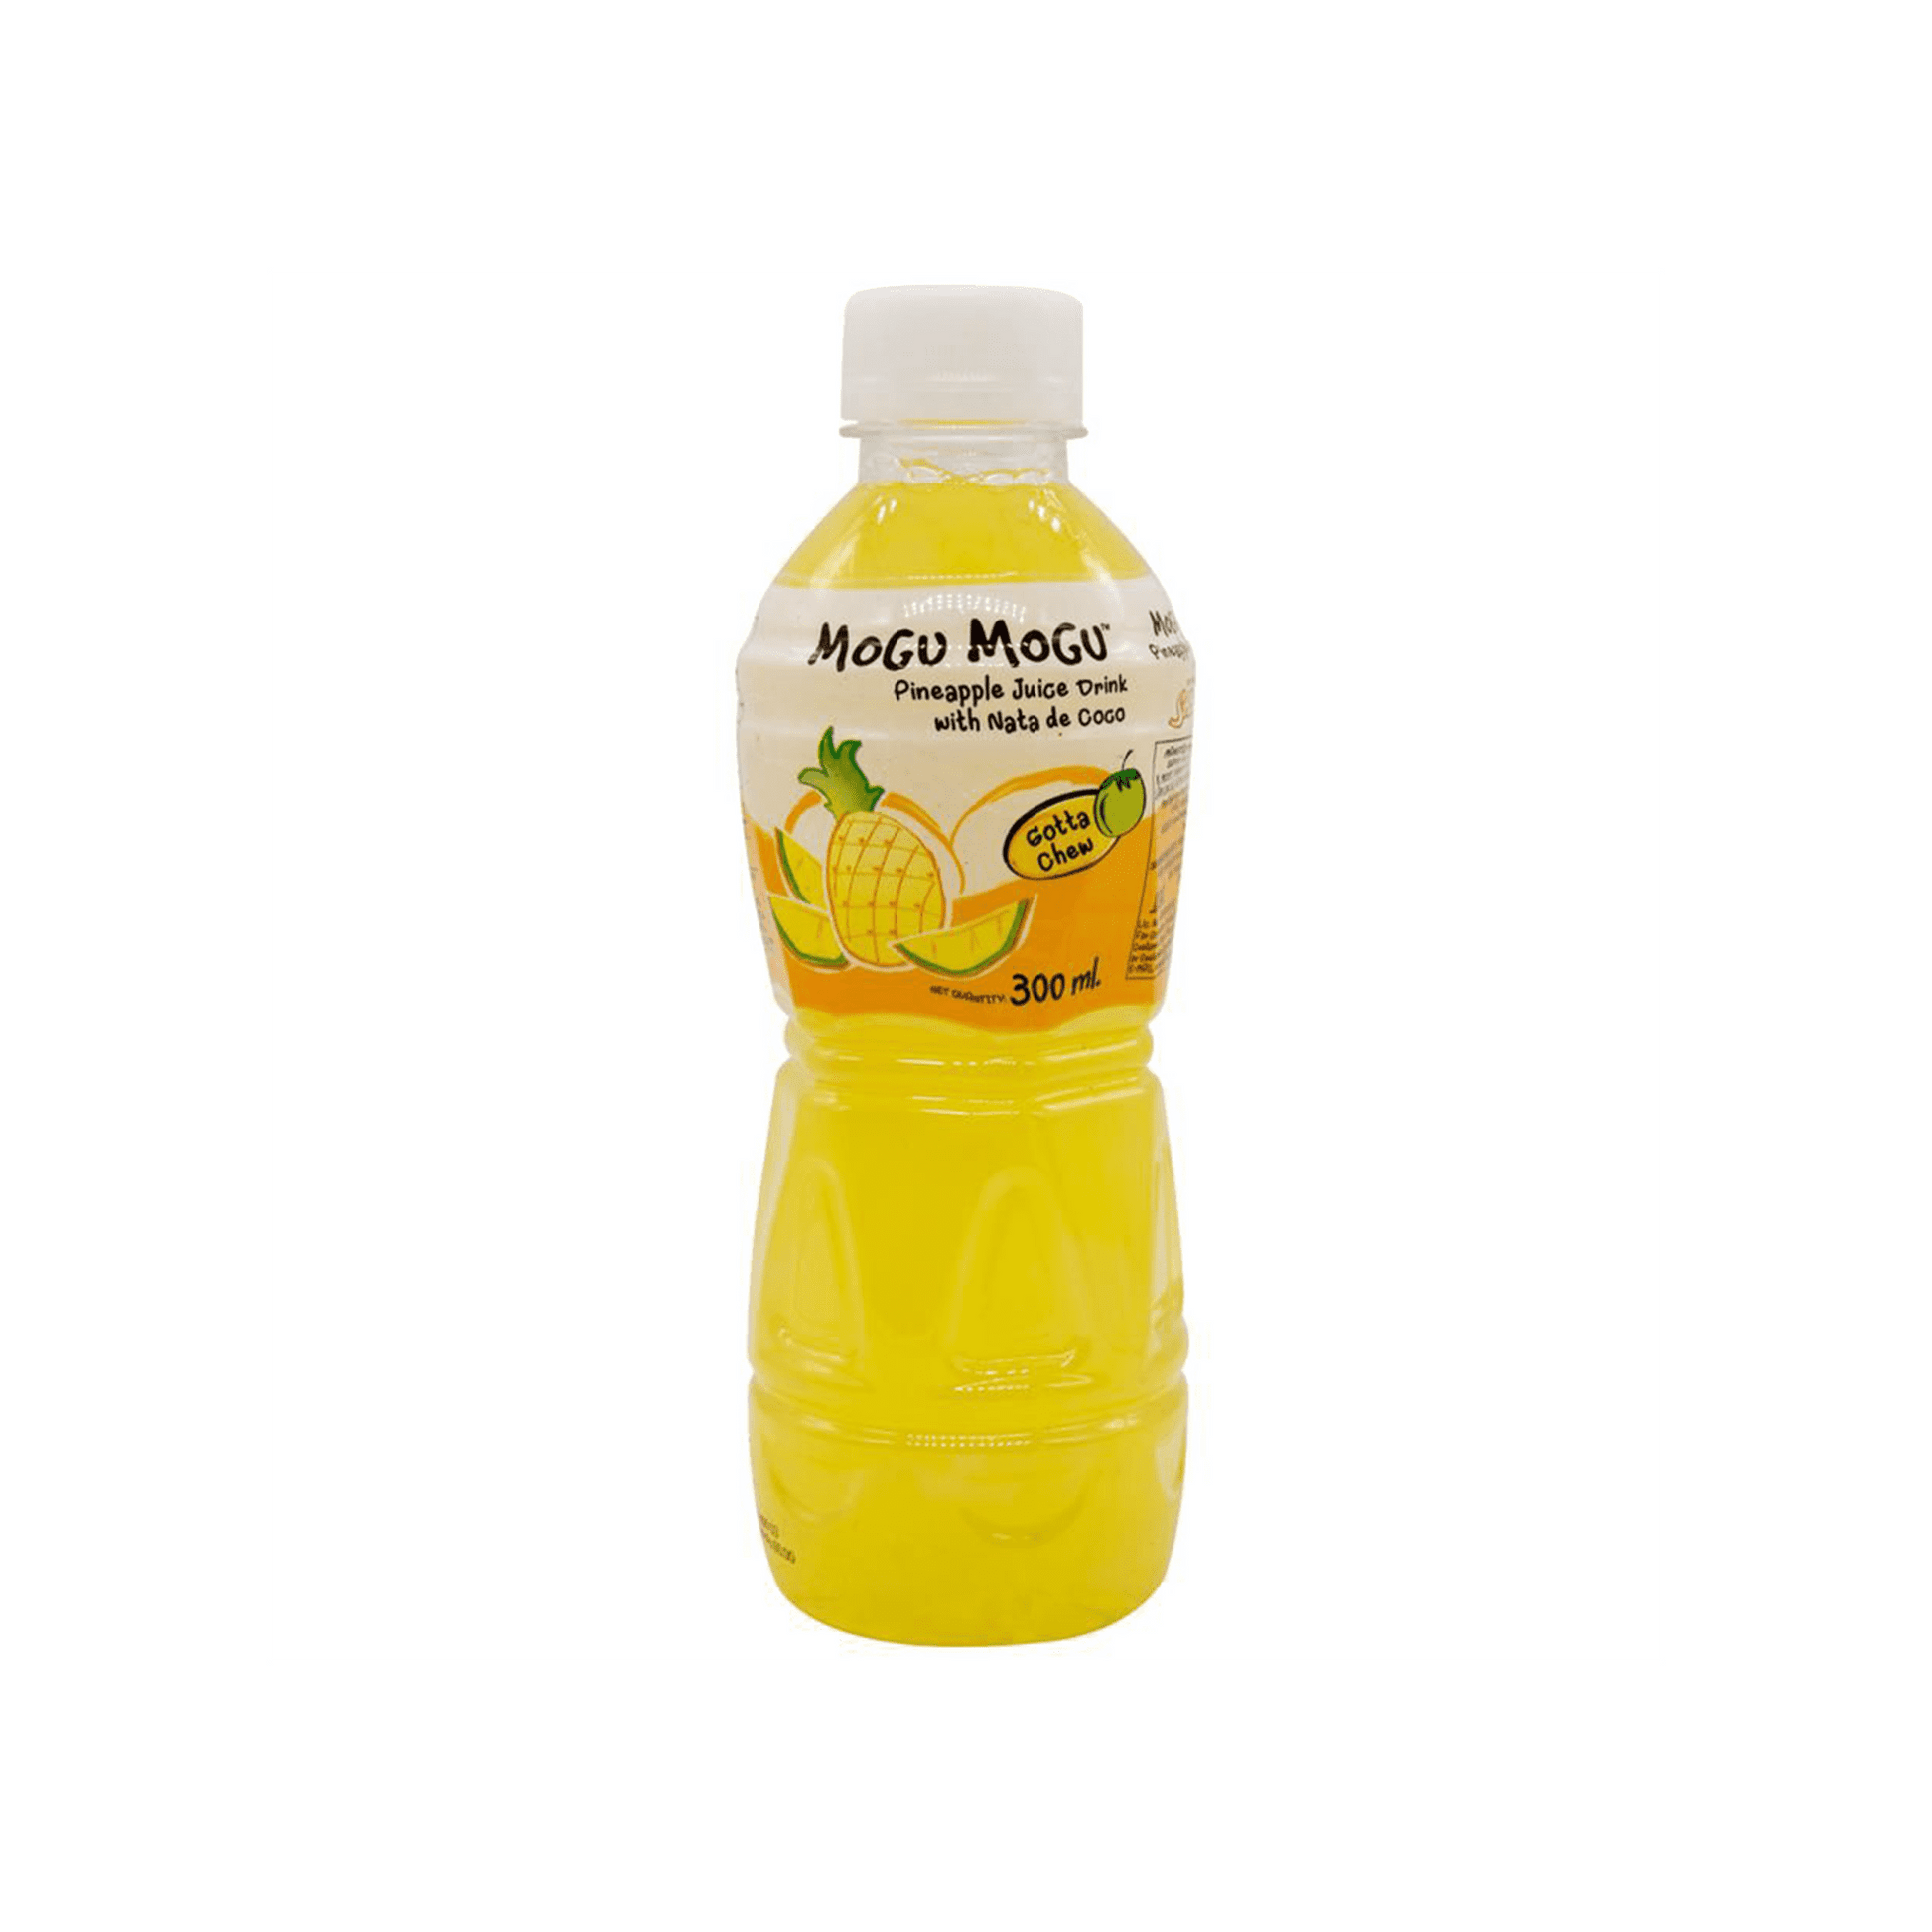 Mogu Mogu Pineapple Juice Drink.